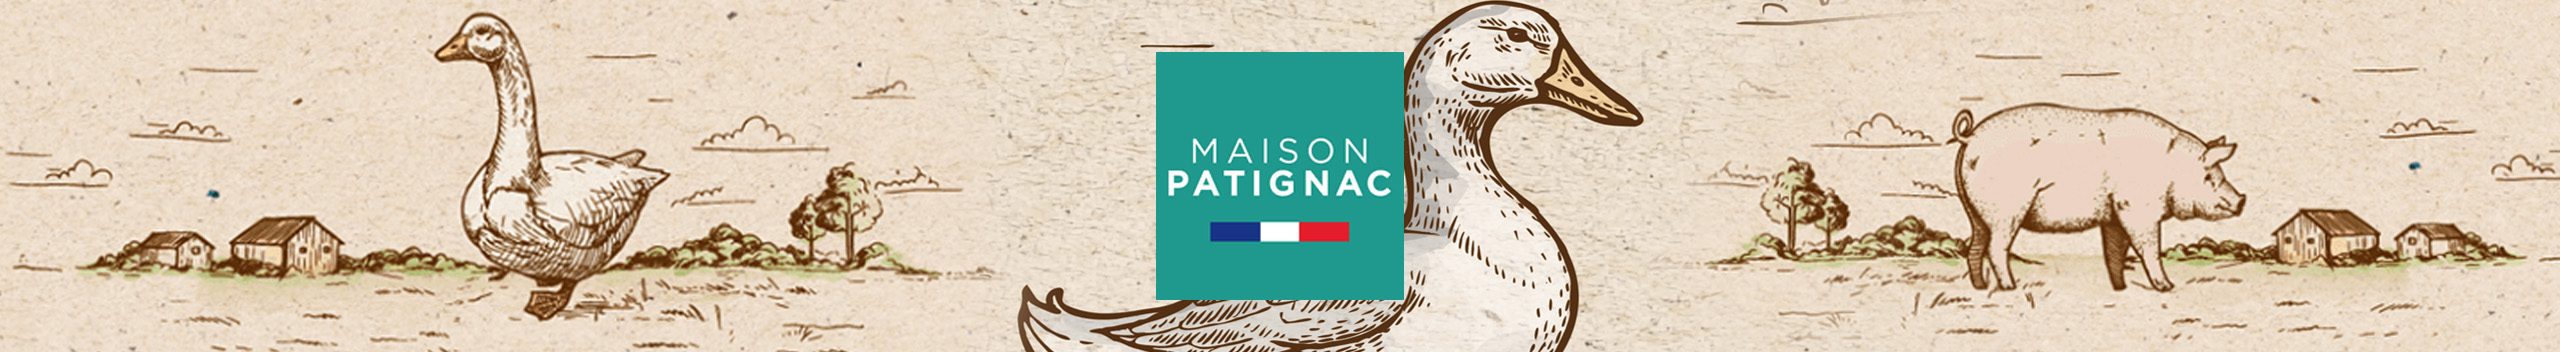 bandeau maison Patignac spécialité du Sud Ouest foie gras terrine rillettes pâté